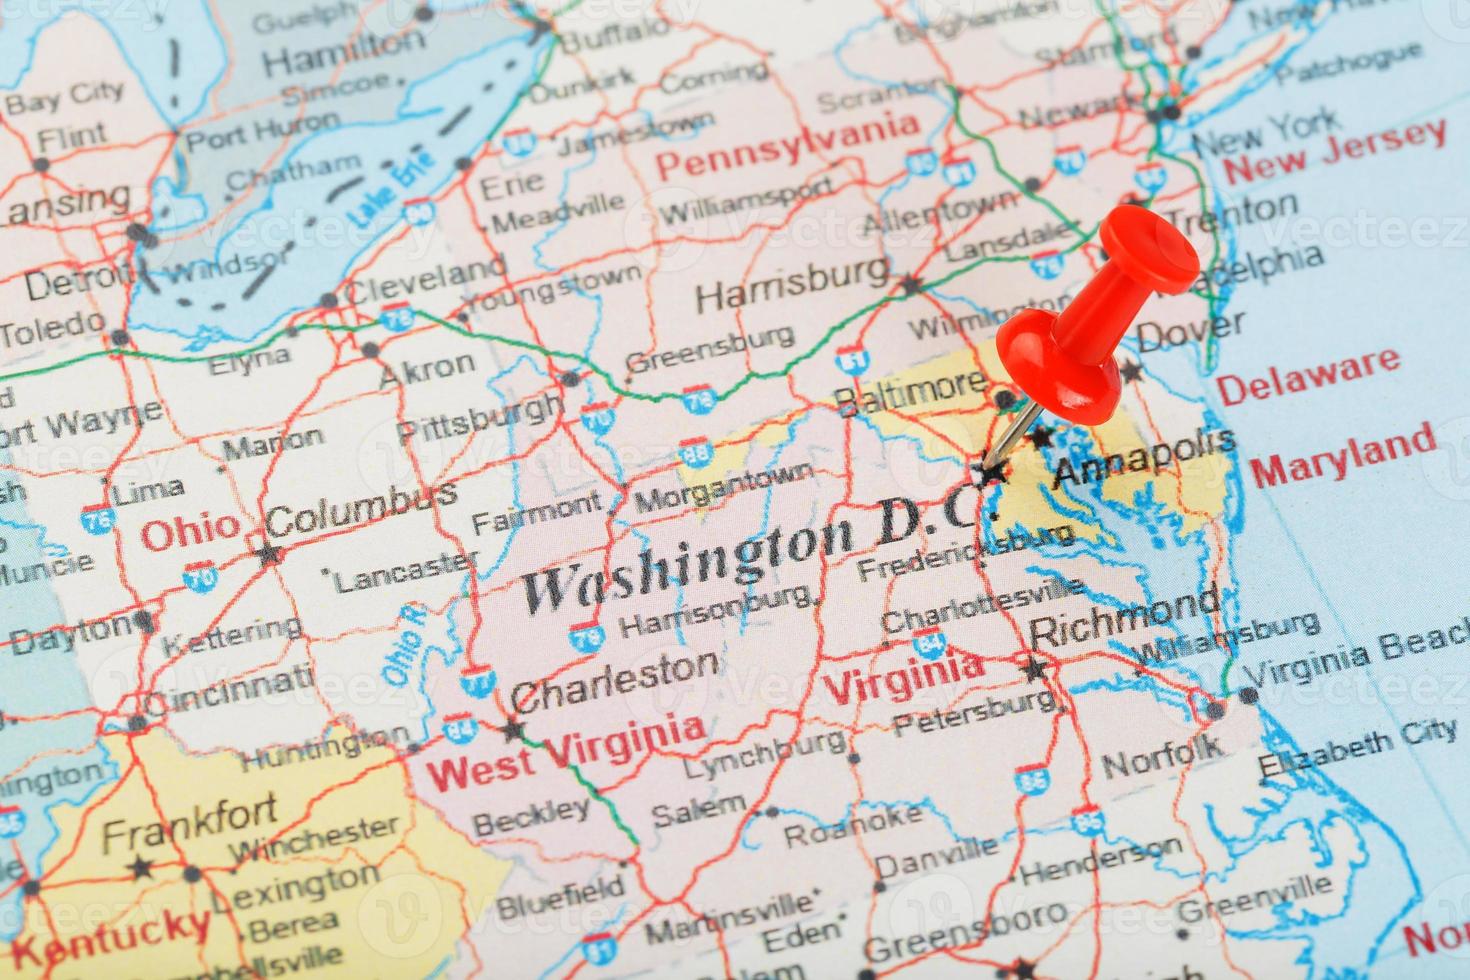 agulha clerical vermelha no mapa dos eua, sul de washington, dc e a capital de richmond. fechar mapa de dc com red tack foto